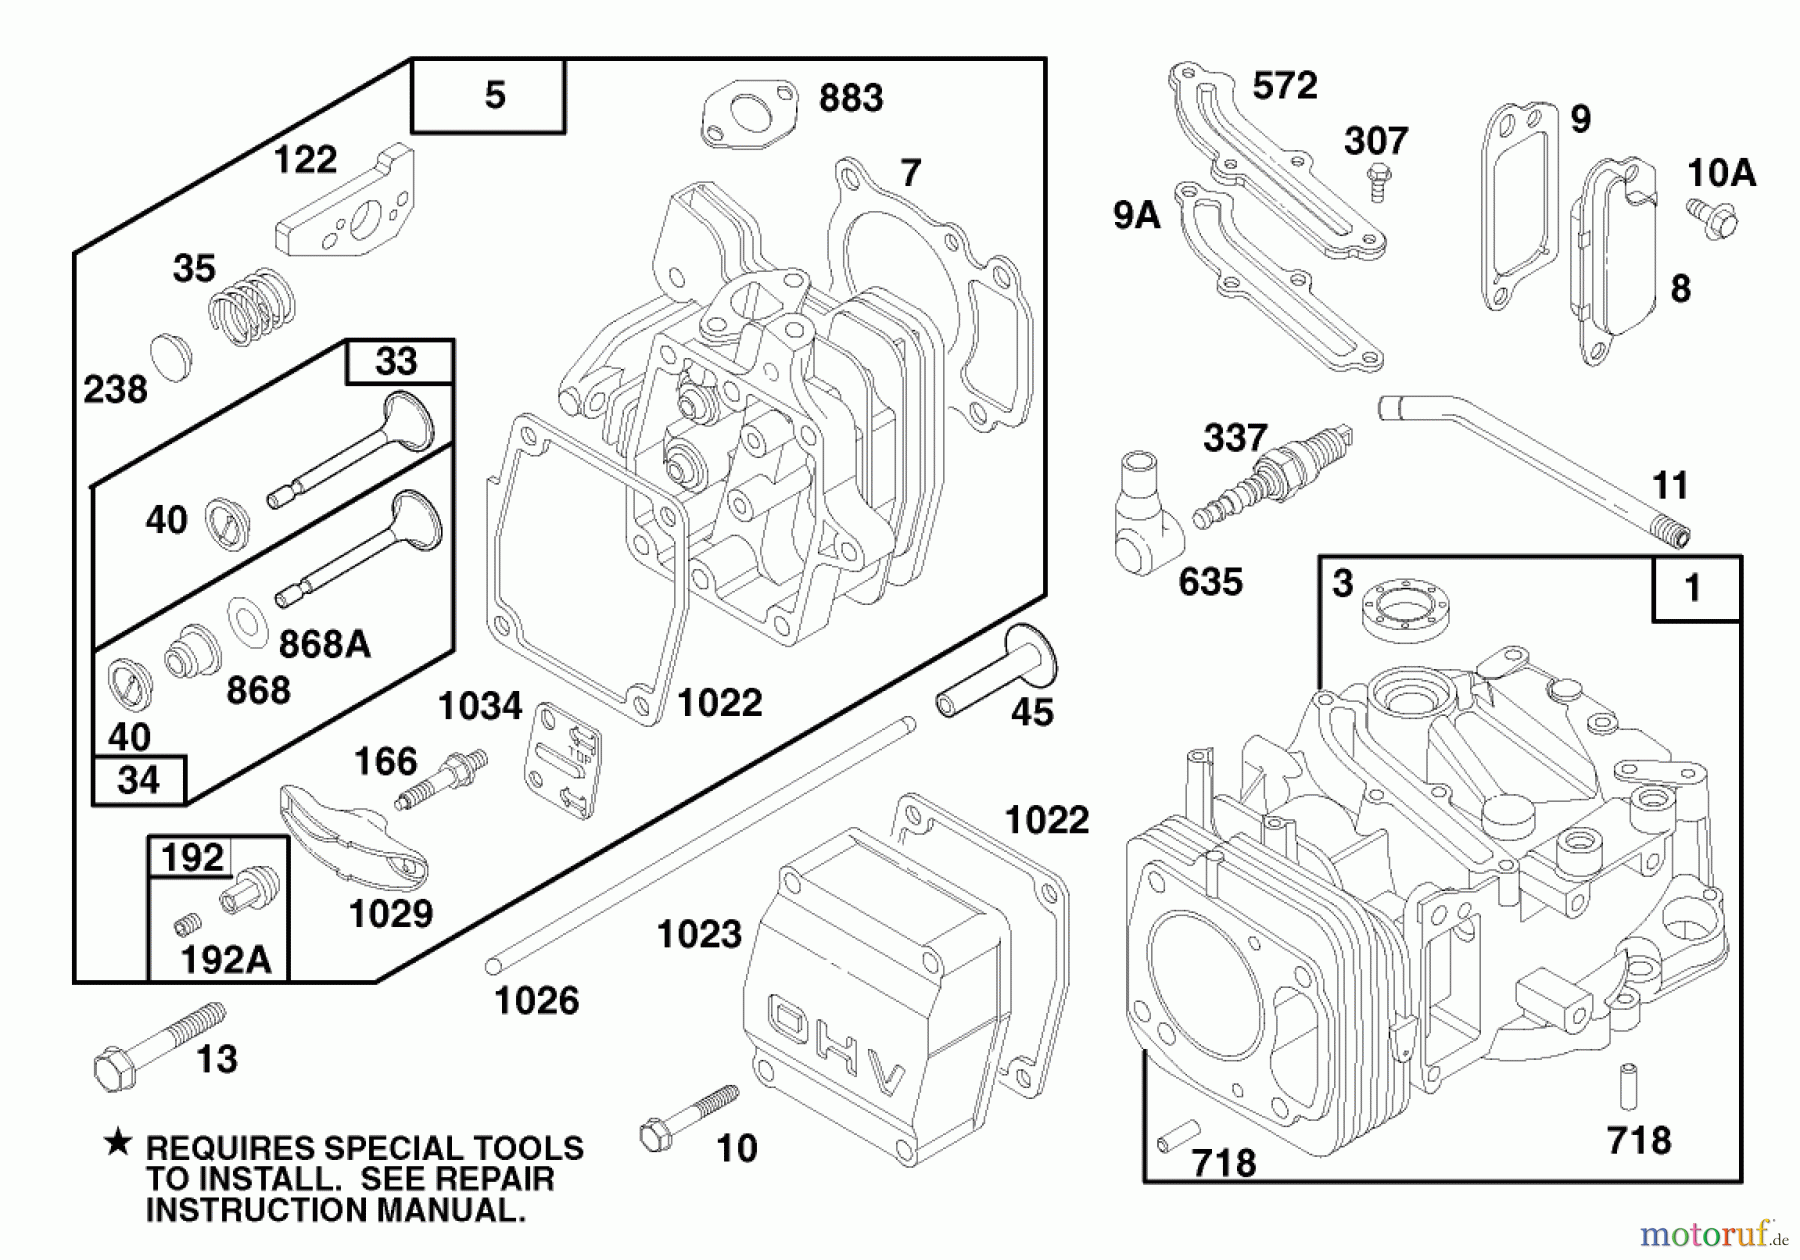  Toro Neu Mowers, Walk-Behind Seite 1 20476 - Toro Lawnmower, 1996 (6900001-6999999) ENGINE GTS 150 (MODEL NO. 20476 ONLY) #1